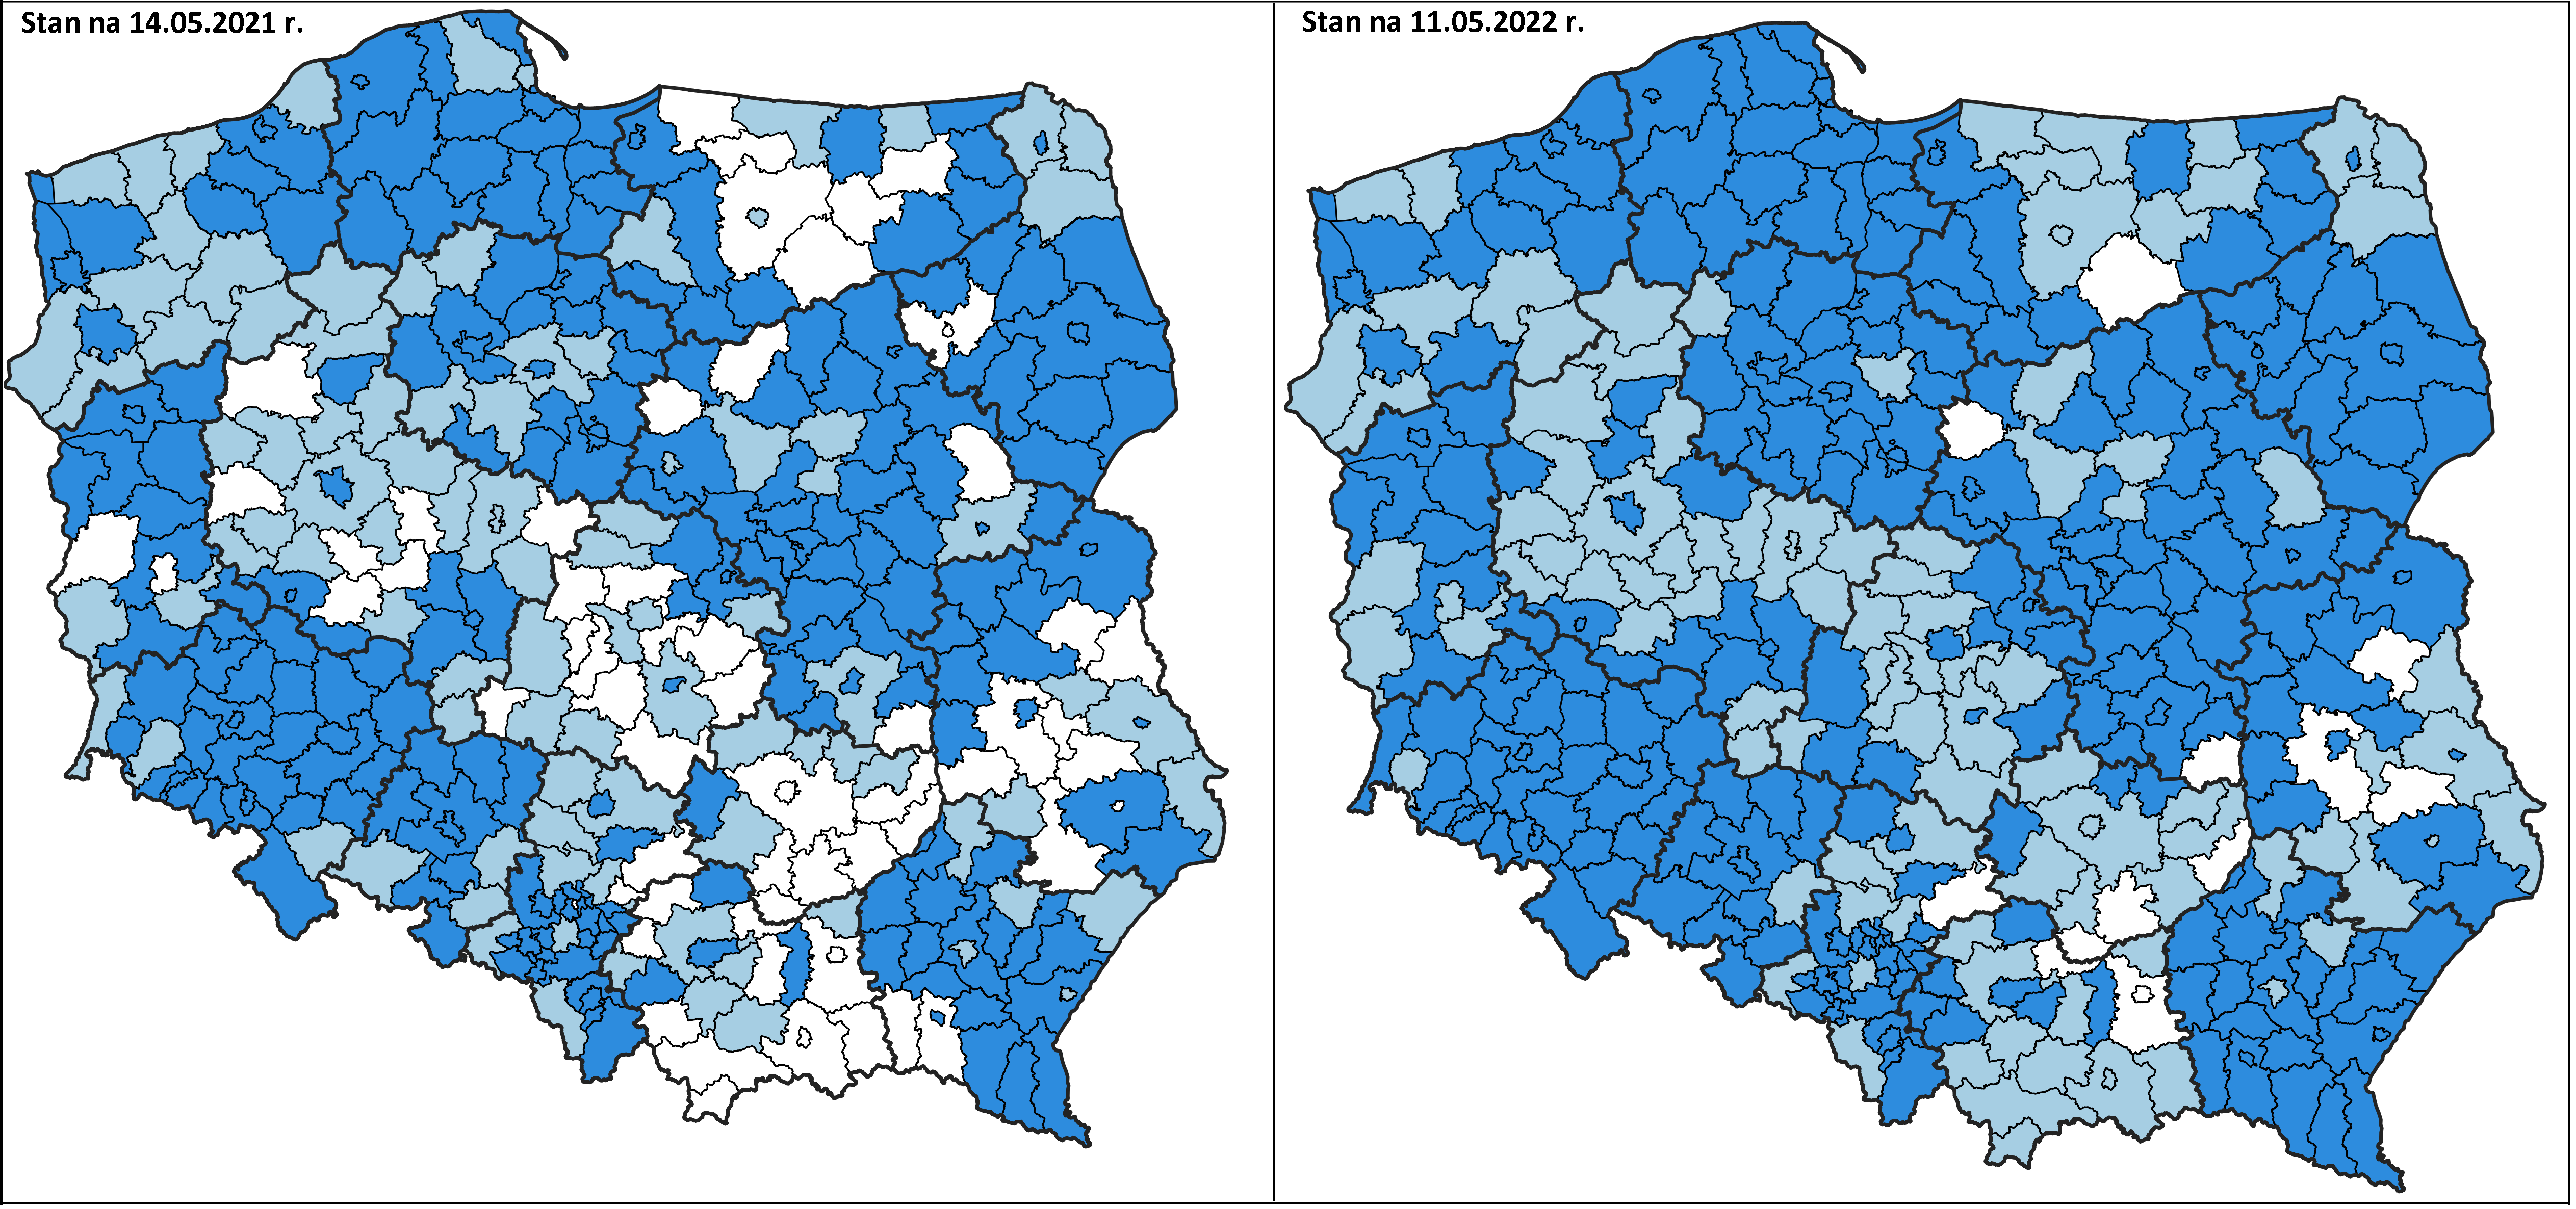 Ilustracja przedstawia zestawione obok siebie 2 mapy Polski z oznaczonym kolorystycznie stanem wdrażania układu PL-EVRF2007-NH w powiatach po lewej stronie wg stanu na dzień 14 maja 2021 roku, wg stanu na dzień 11 maja 2022 roku po prawej stronie.